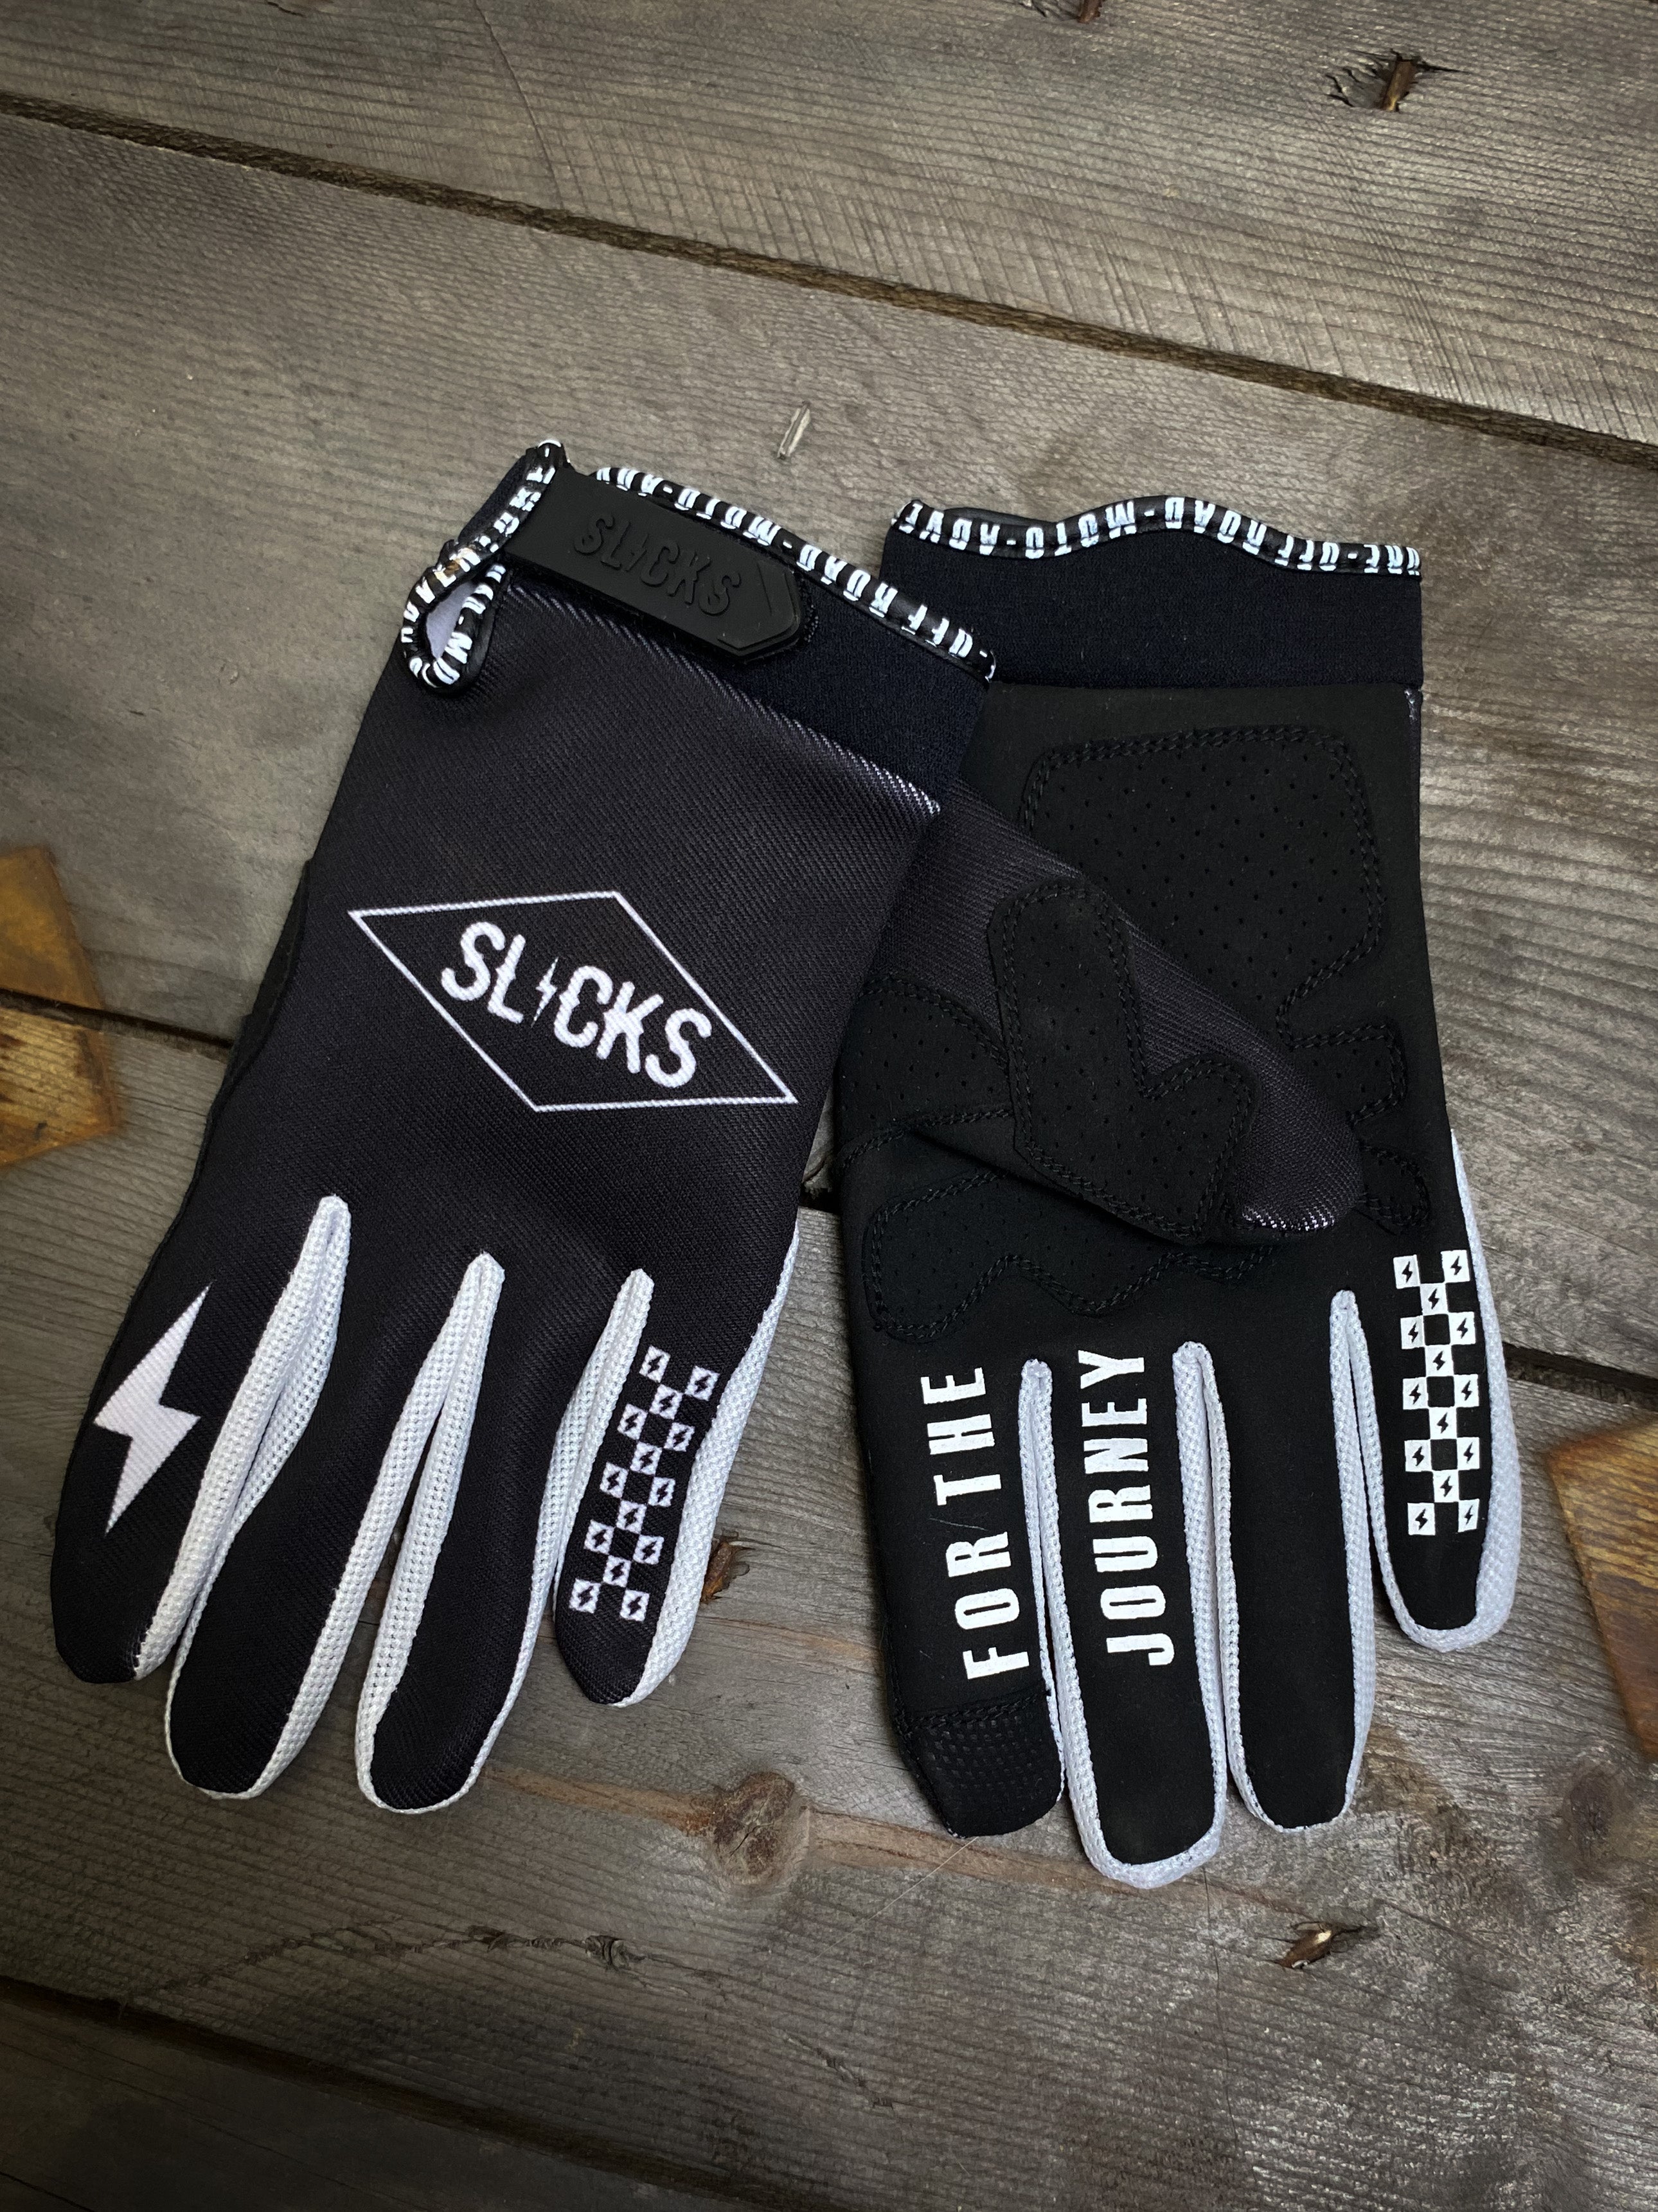 Moto gloves